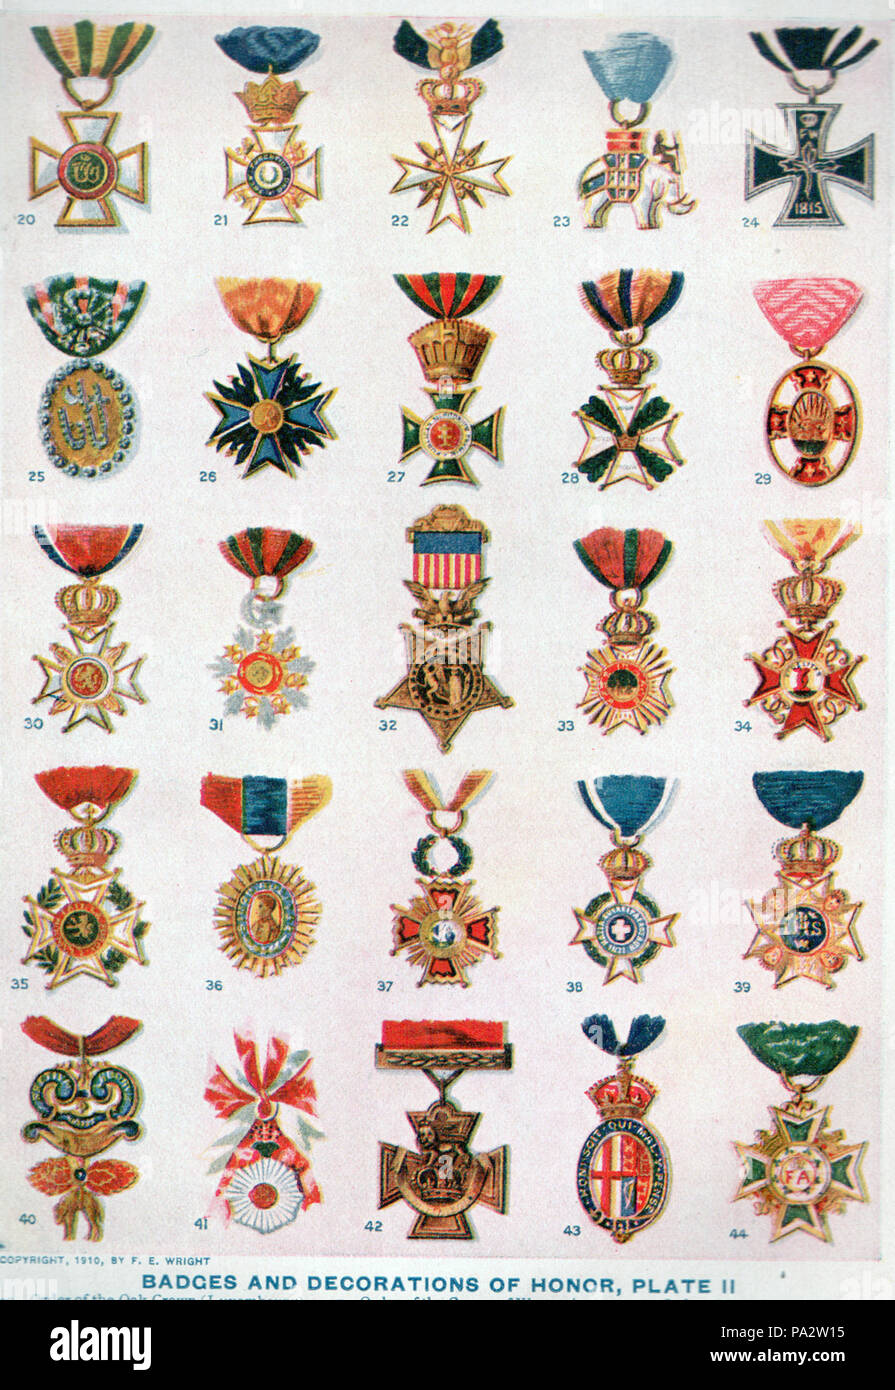 . 20  : Ordre de la couronne de chêne (Luxembourg) 21 : l'Ordre du mérite militaire (Württemberg) 22 : Ordre de Saint John (Chevaliers de Malte) 23 : Ordre de l'éléphant (Danemark) 24 : Ordre de la Croix de Fer (Prusse) 25 : le Badge Nichan (Tunis), de l'ordre du Nichan Iftikhar (Gloire) 26 : à l'ordre de l'Aigle Noir (Prusse) 27 : Ordre de Saint Stephen (Hongrie) 28 : William Militaire Ordre (Pays-Bas) 29 : Ordre du Lion et du Soleil (Perse) 30 : à l'ordre de Saint-olaf (Norvège) 31 : à l'ordre du Medjidie (Turquie) 32 : Médaille d'Honneur (United States) 33 : Ordre de Saint Hubert (Bavière) 34 : Ordre de la fidélité (B Banque D'Images